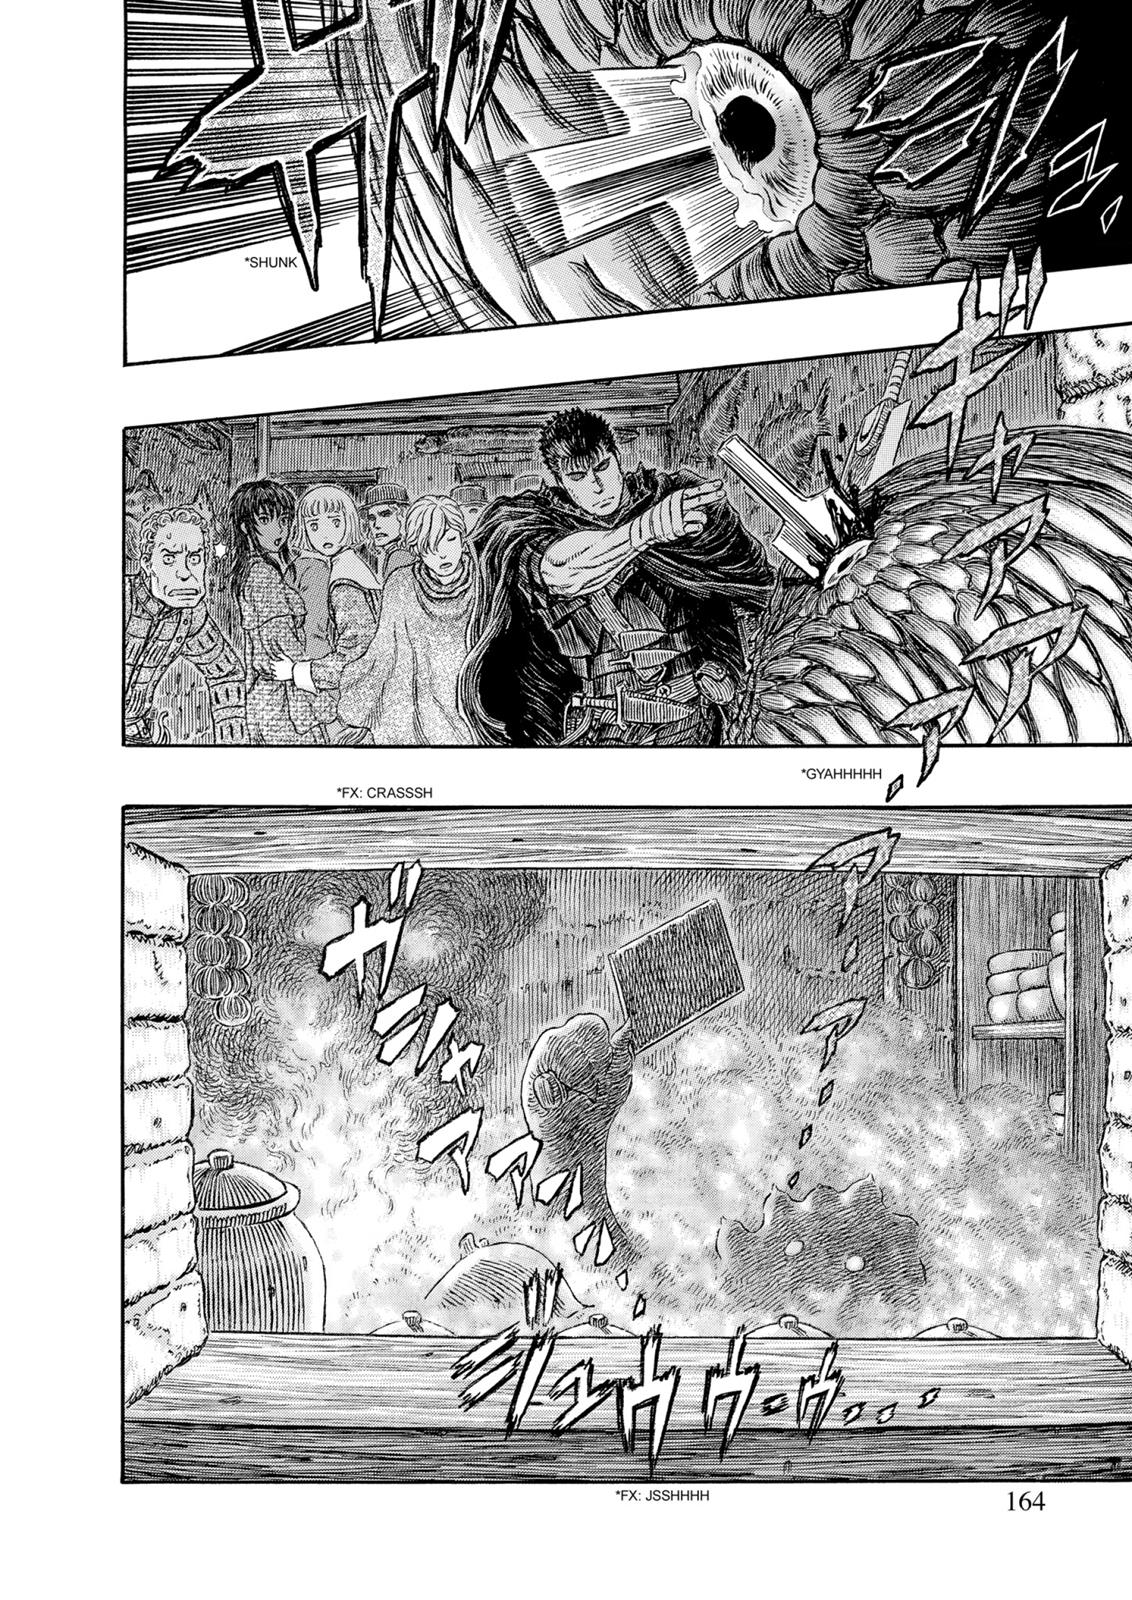 Berserk Manga Chapter 313 image 16